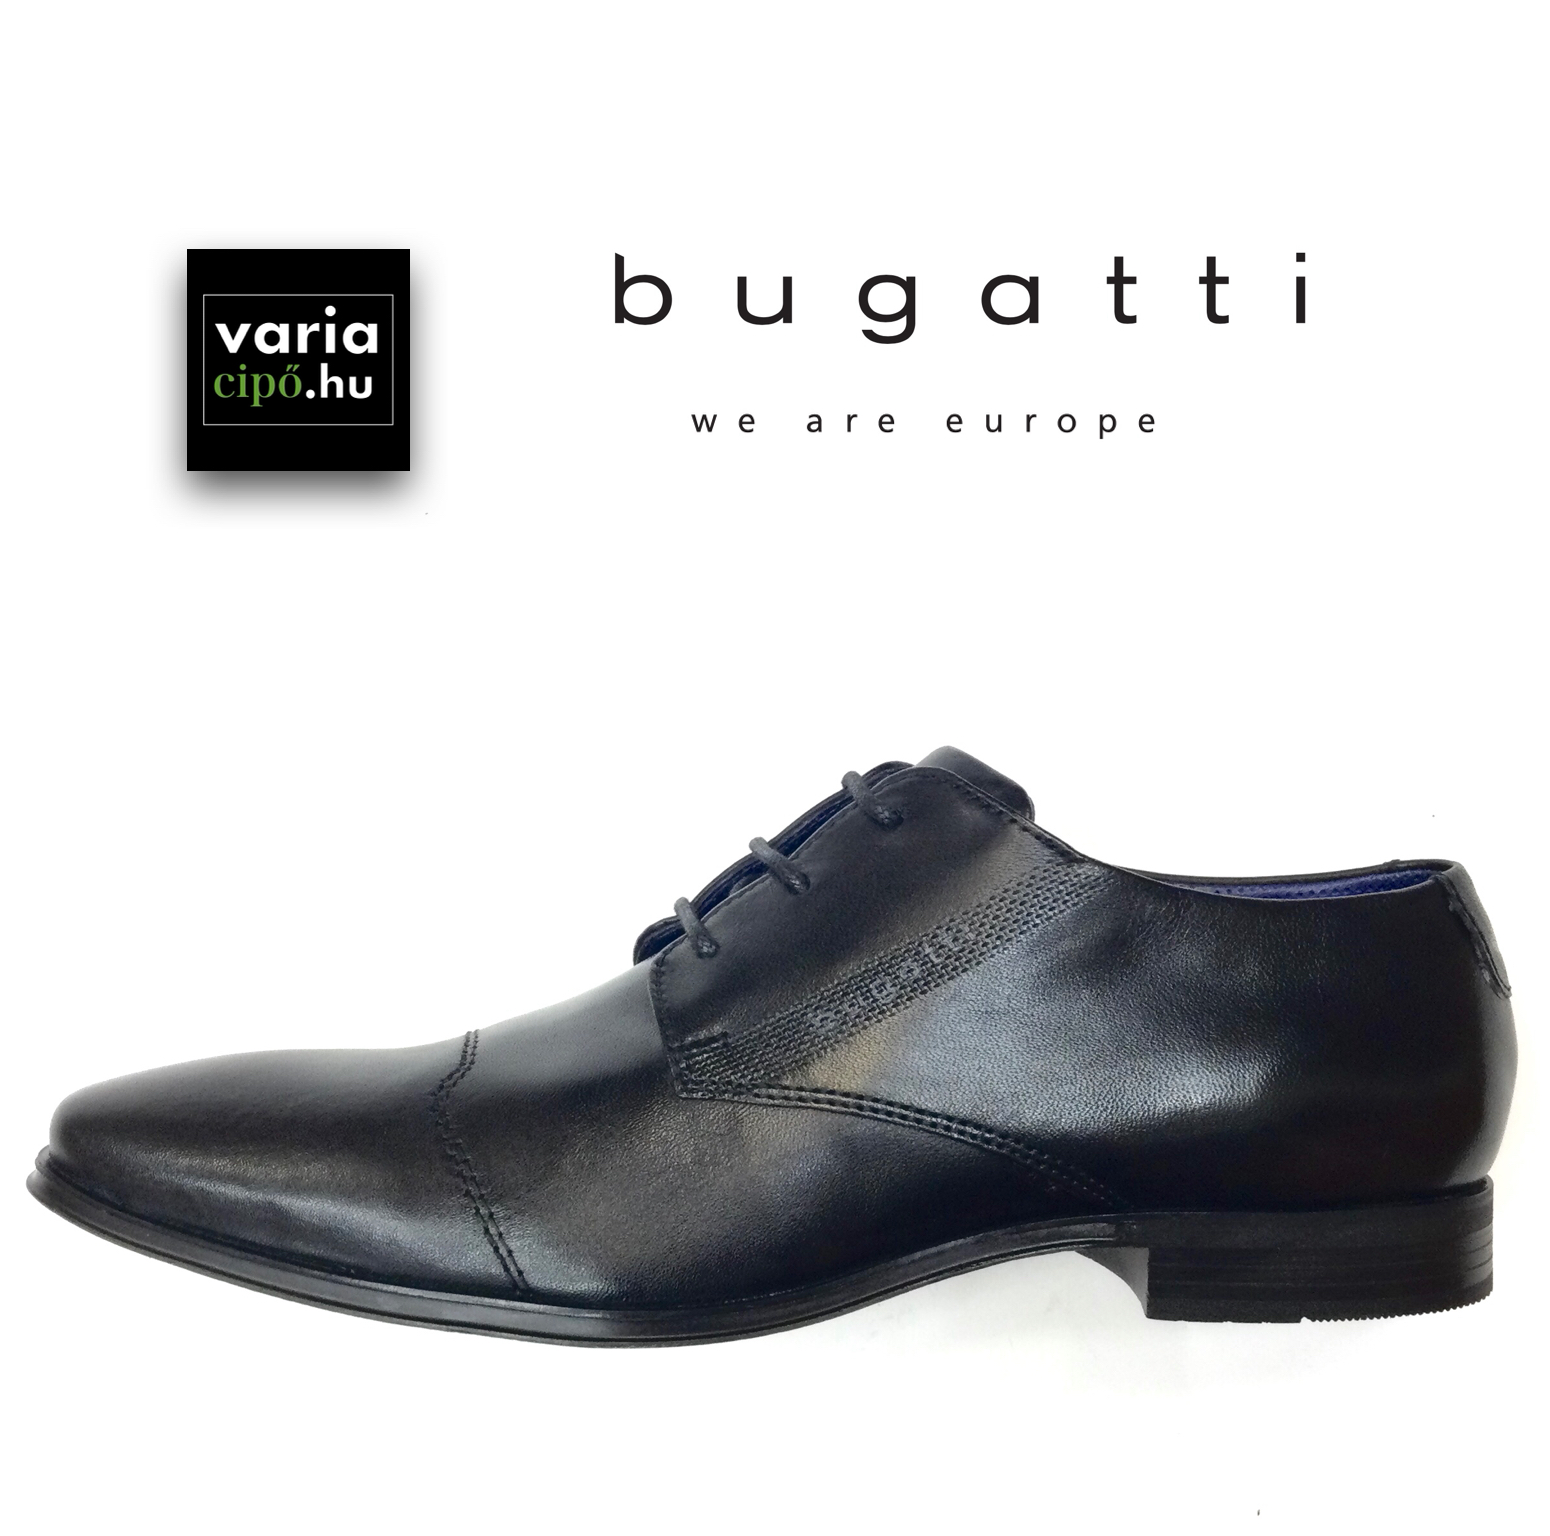 Bugatti klasszikus fekete alkalmi cipő, 311-A3110-4000 1000 black